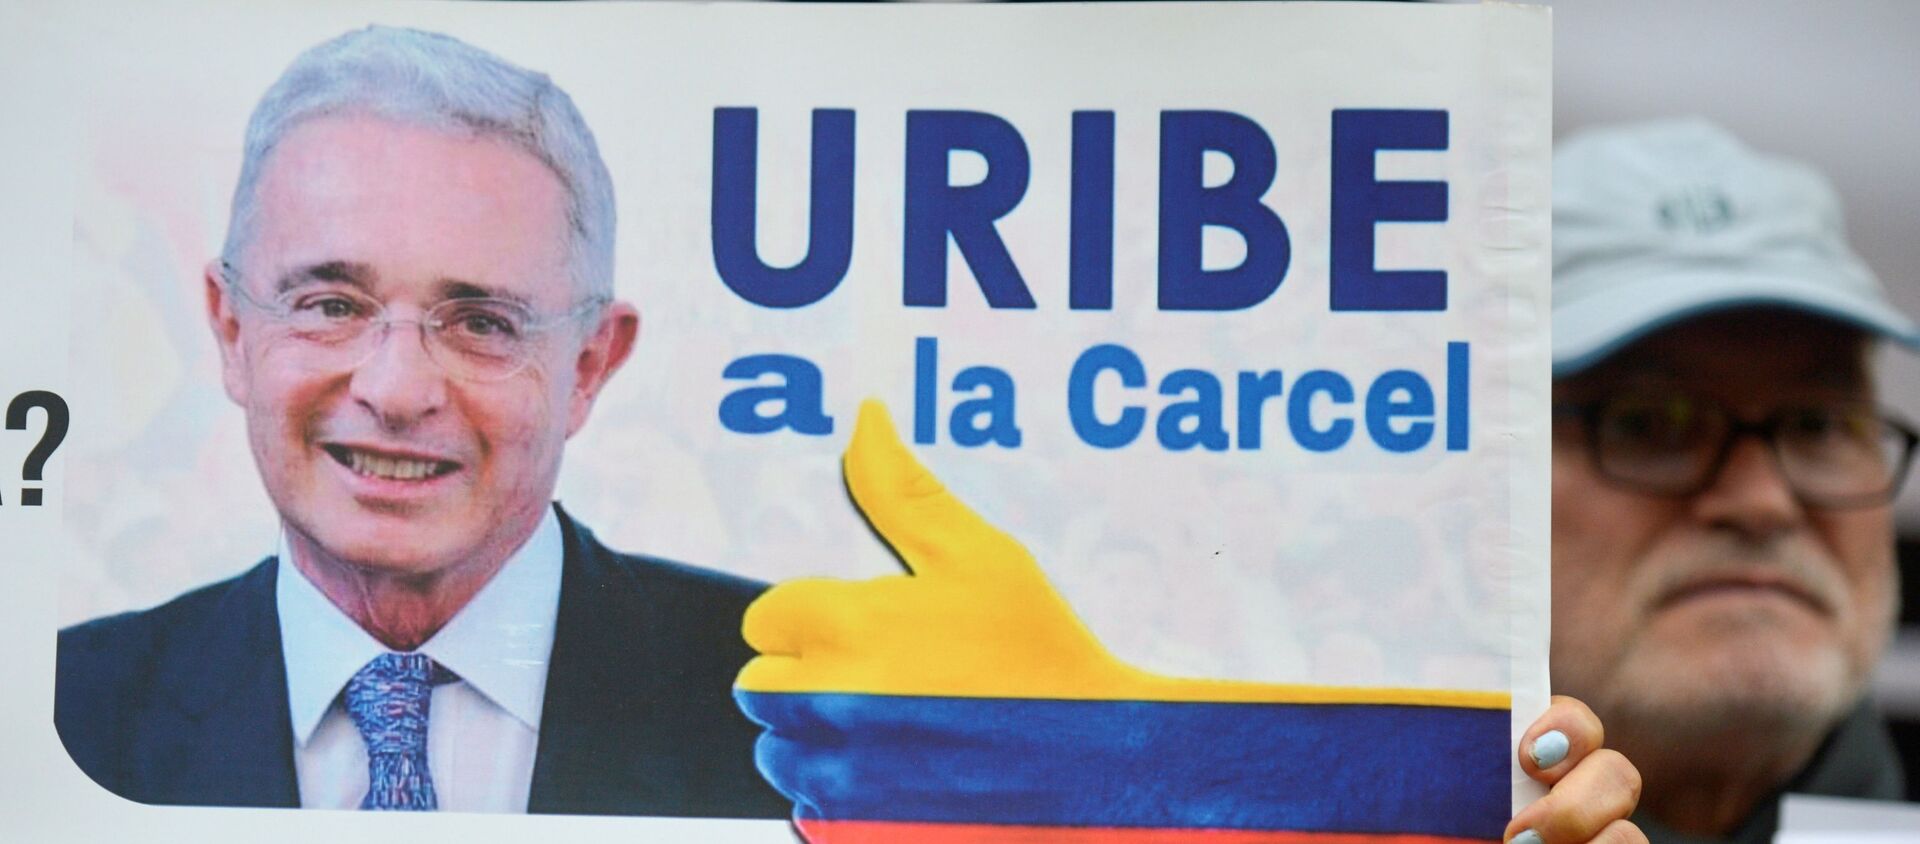 Una pancarta contra Álvaro Uribe, senador y expresidente colombiano  - Sputnik Mundo, 1920, 25.08.2020